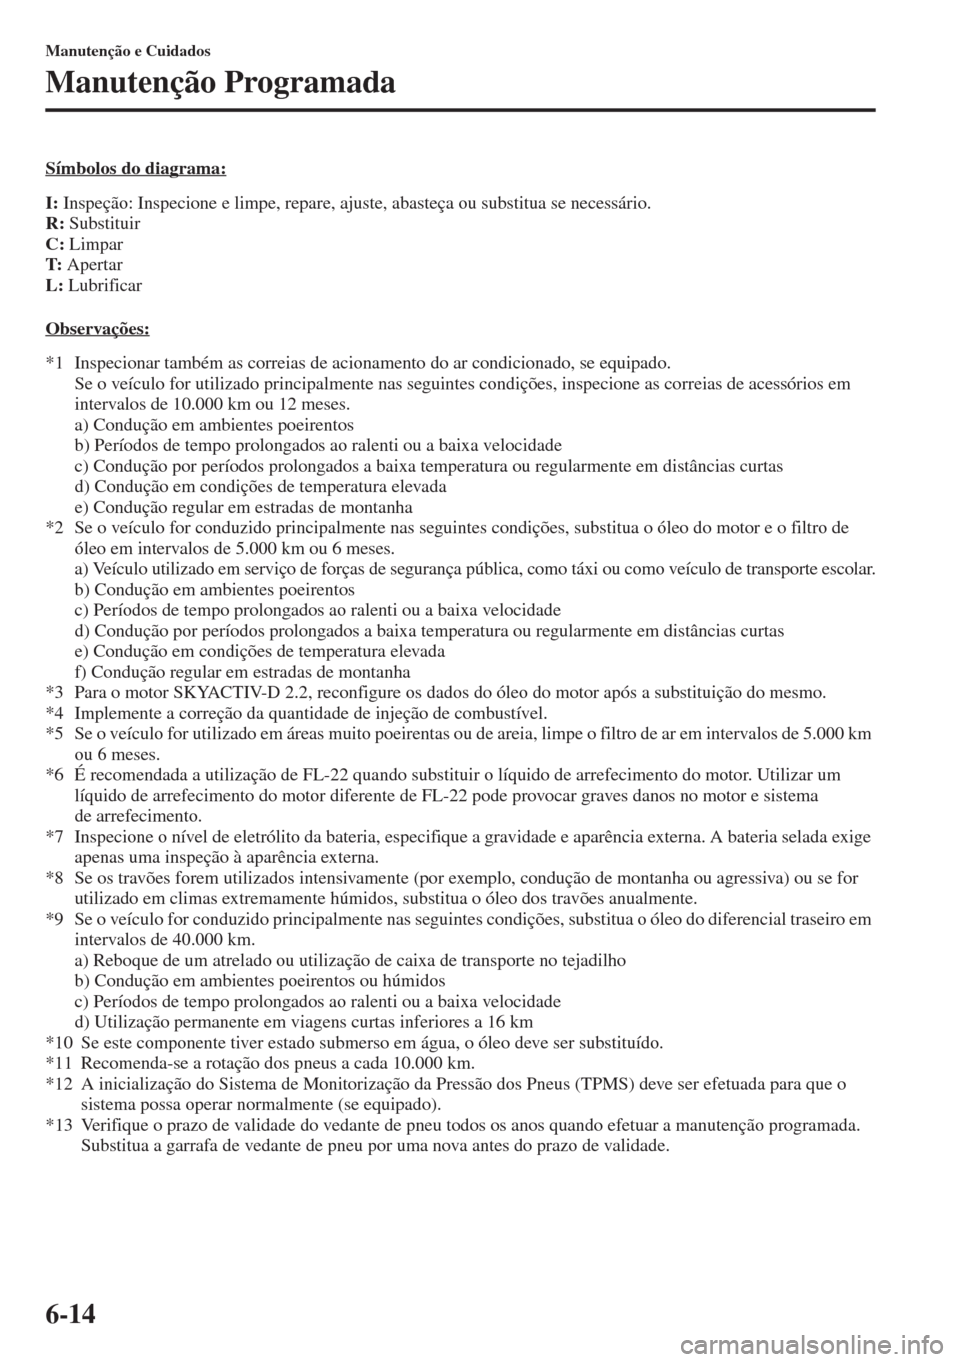 MAZDA MODEL CX-5 2015  Manual do proprietário (in Portuguese) 6-14
Manutenção e Cuidados
Manutenção Programada
Símbolos do diagrama:
I: Inspeção: Inspecione e limpe, repare, ajuste, abasteça ou substitua se necessário.
R: Substituir
C: Limpar
T: Apertar